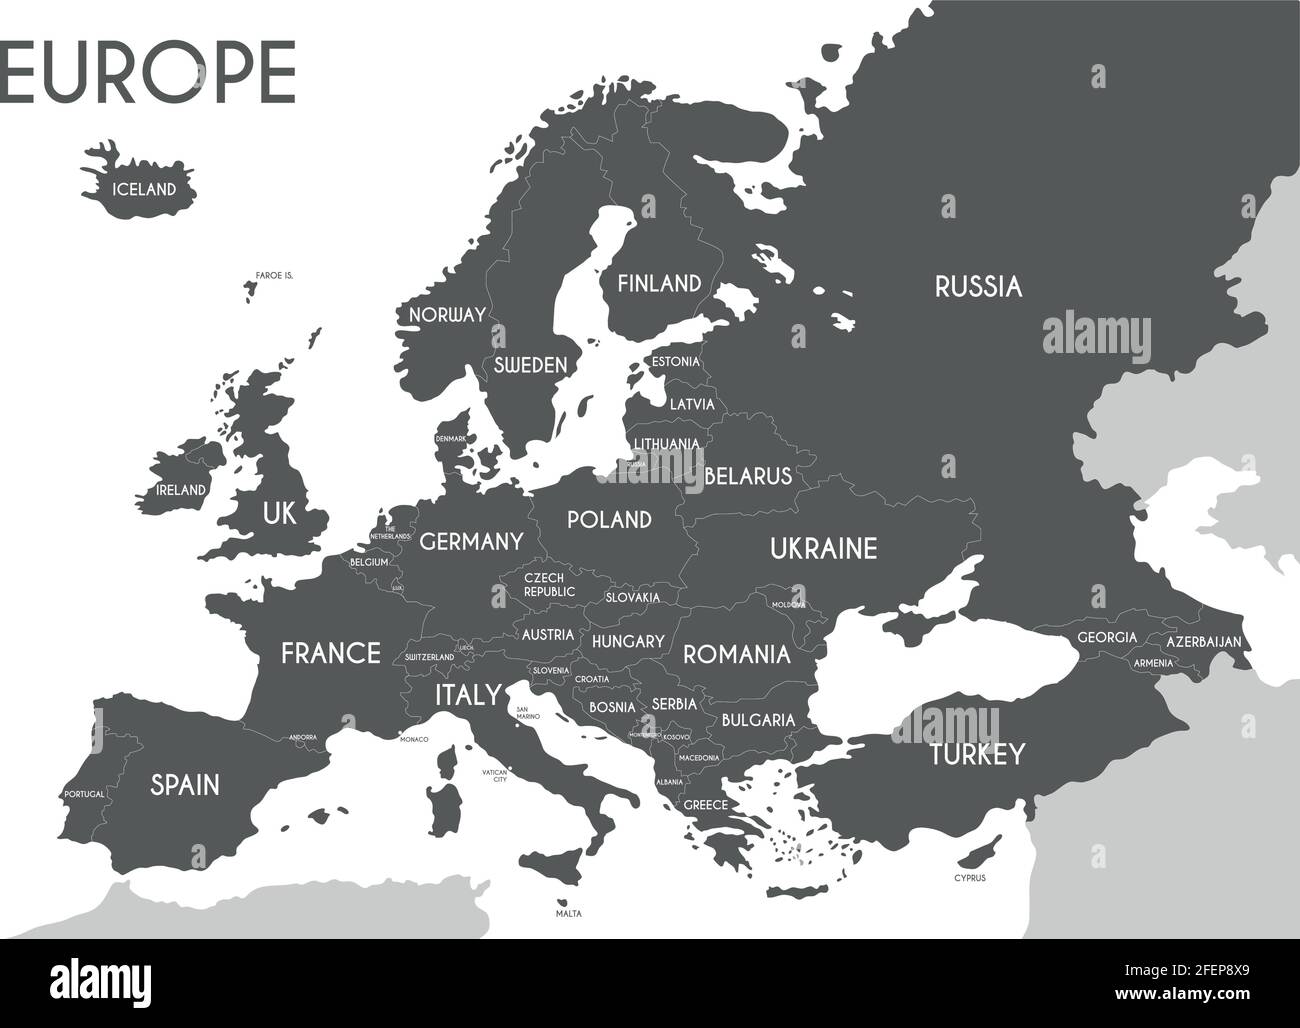 Politische Landkarte von Europa in grauer Farbe mit weißem Hintergrund und den Namen der Länder in englischer Sprache. Vektorgrafik Stock Vektor